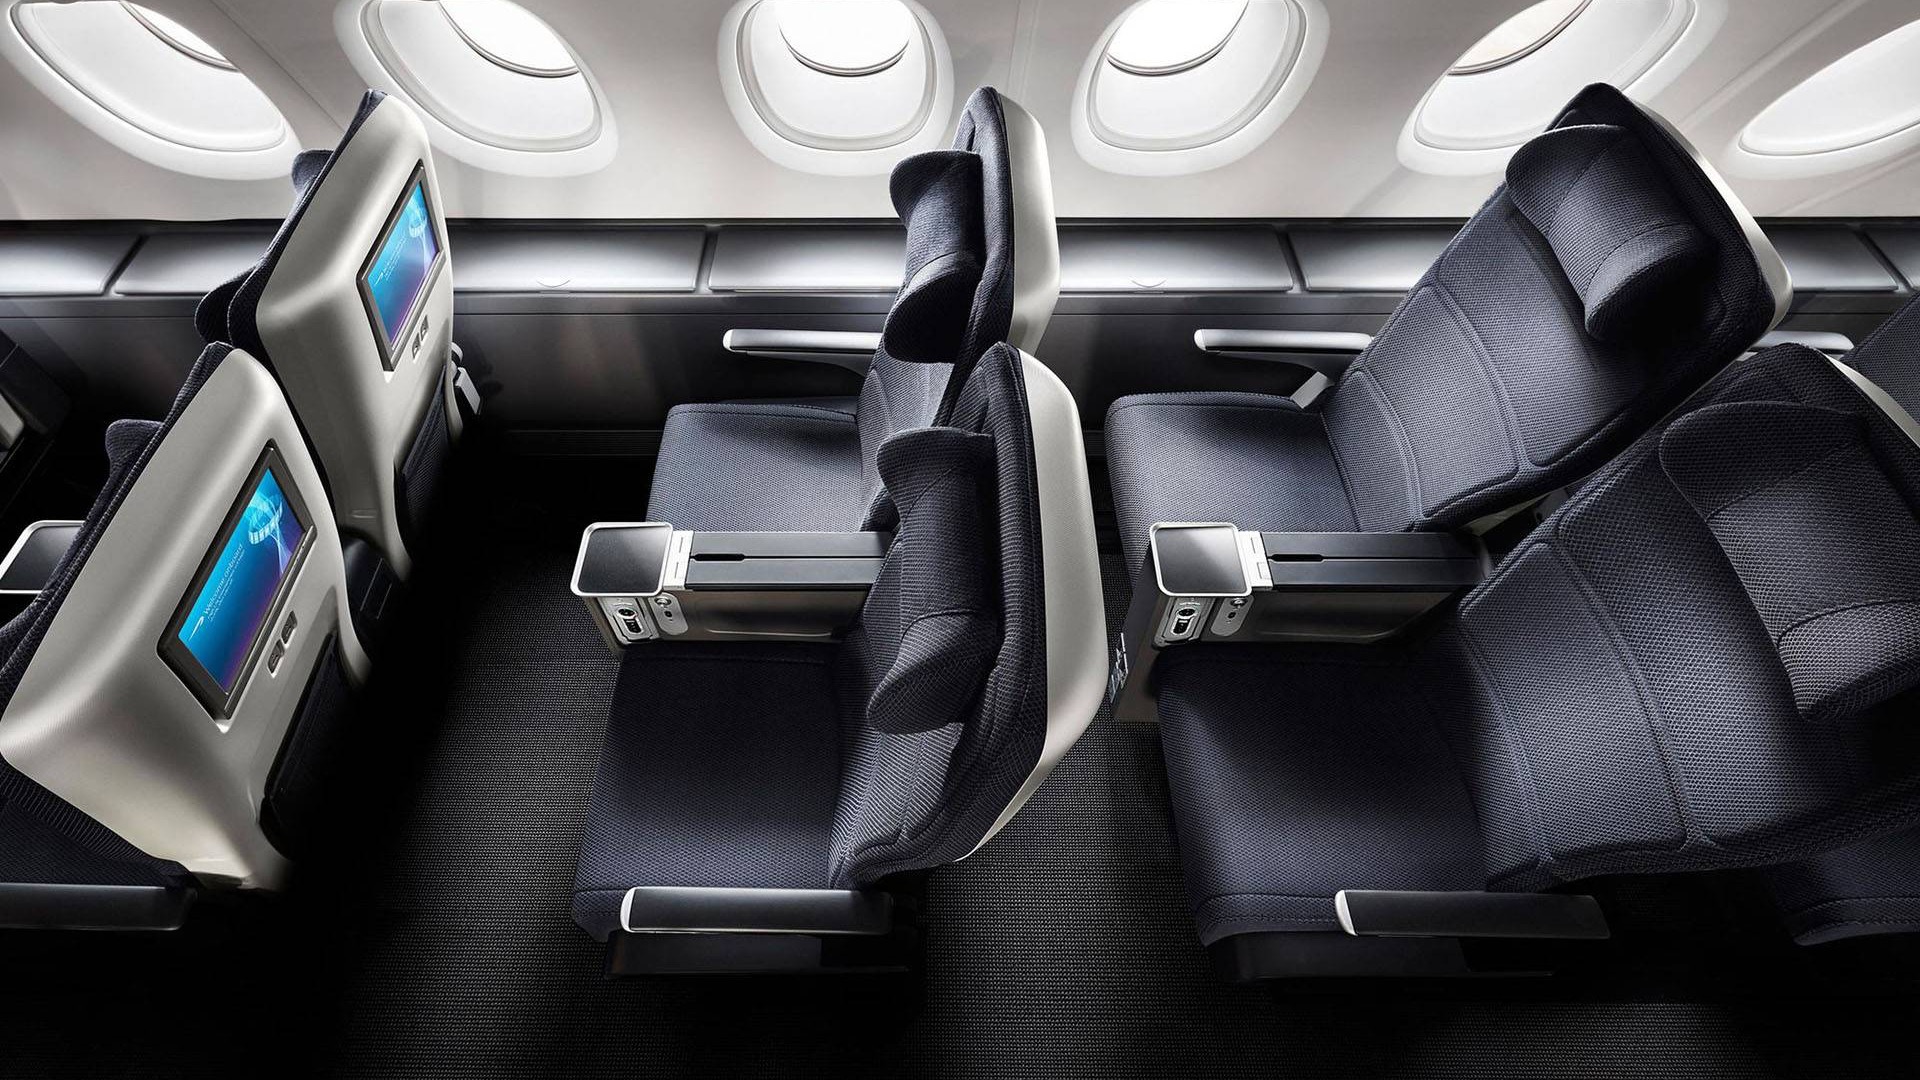 Review Of British Airways Premium Economy BusinessClass